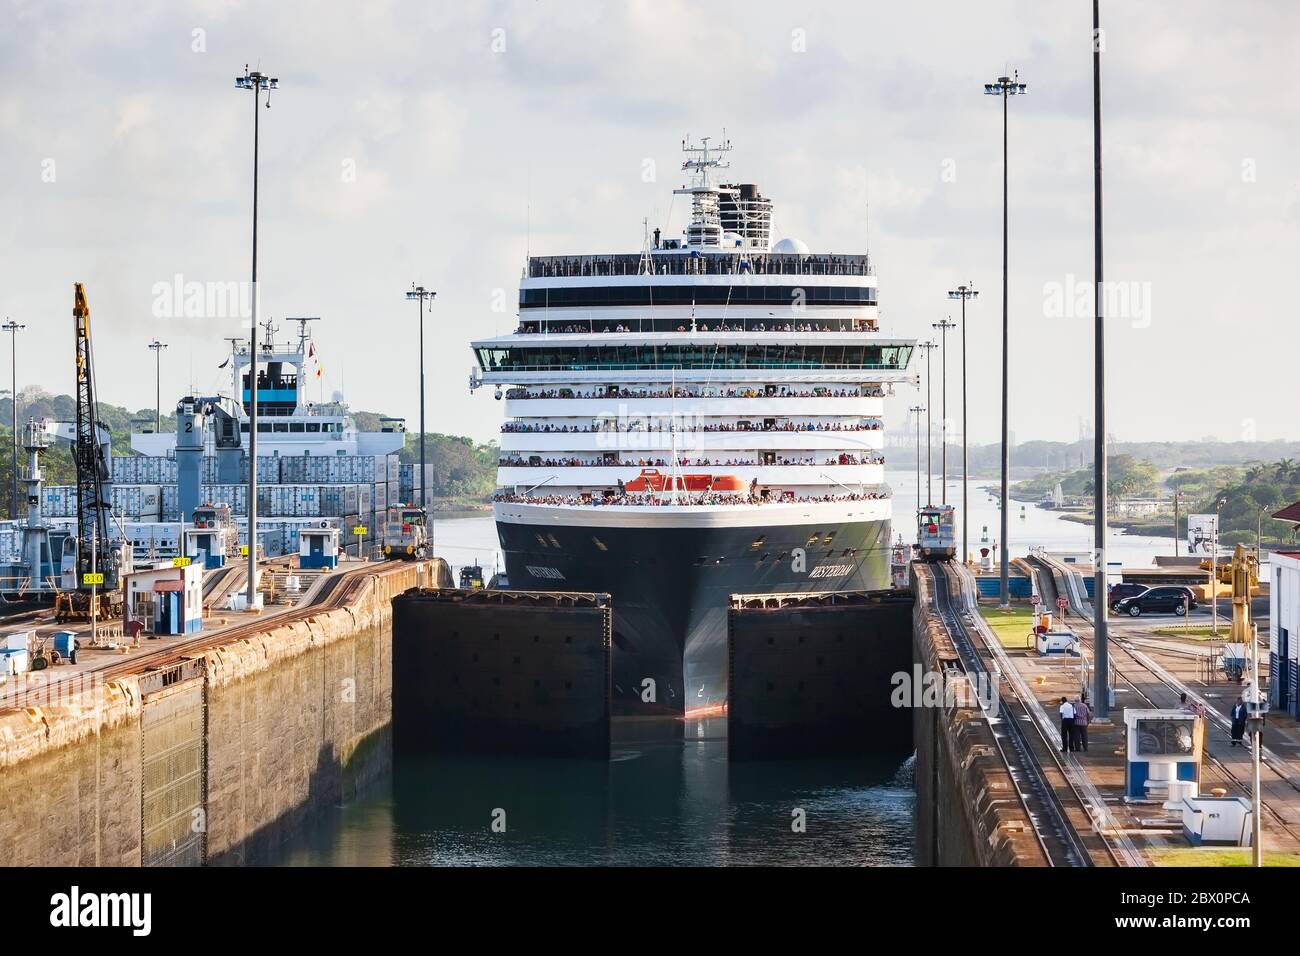 Canale di Panama, Panama - 20 aprile 2011: La nave entra nelle chiuse di Gatun. Foto Stock